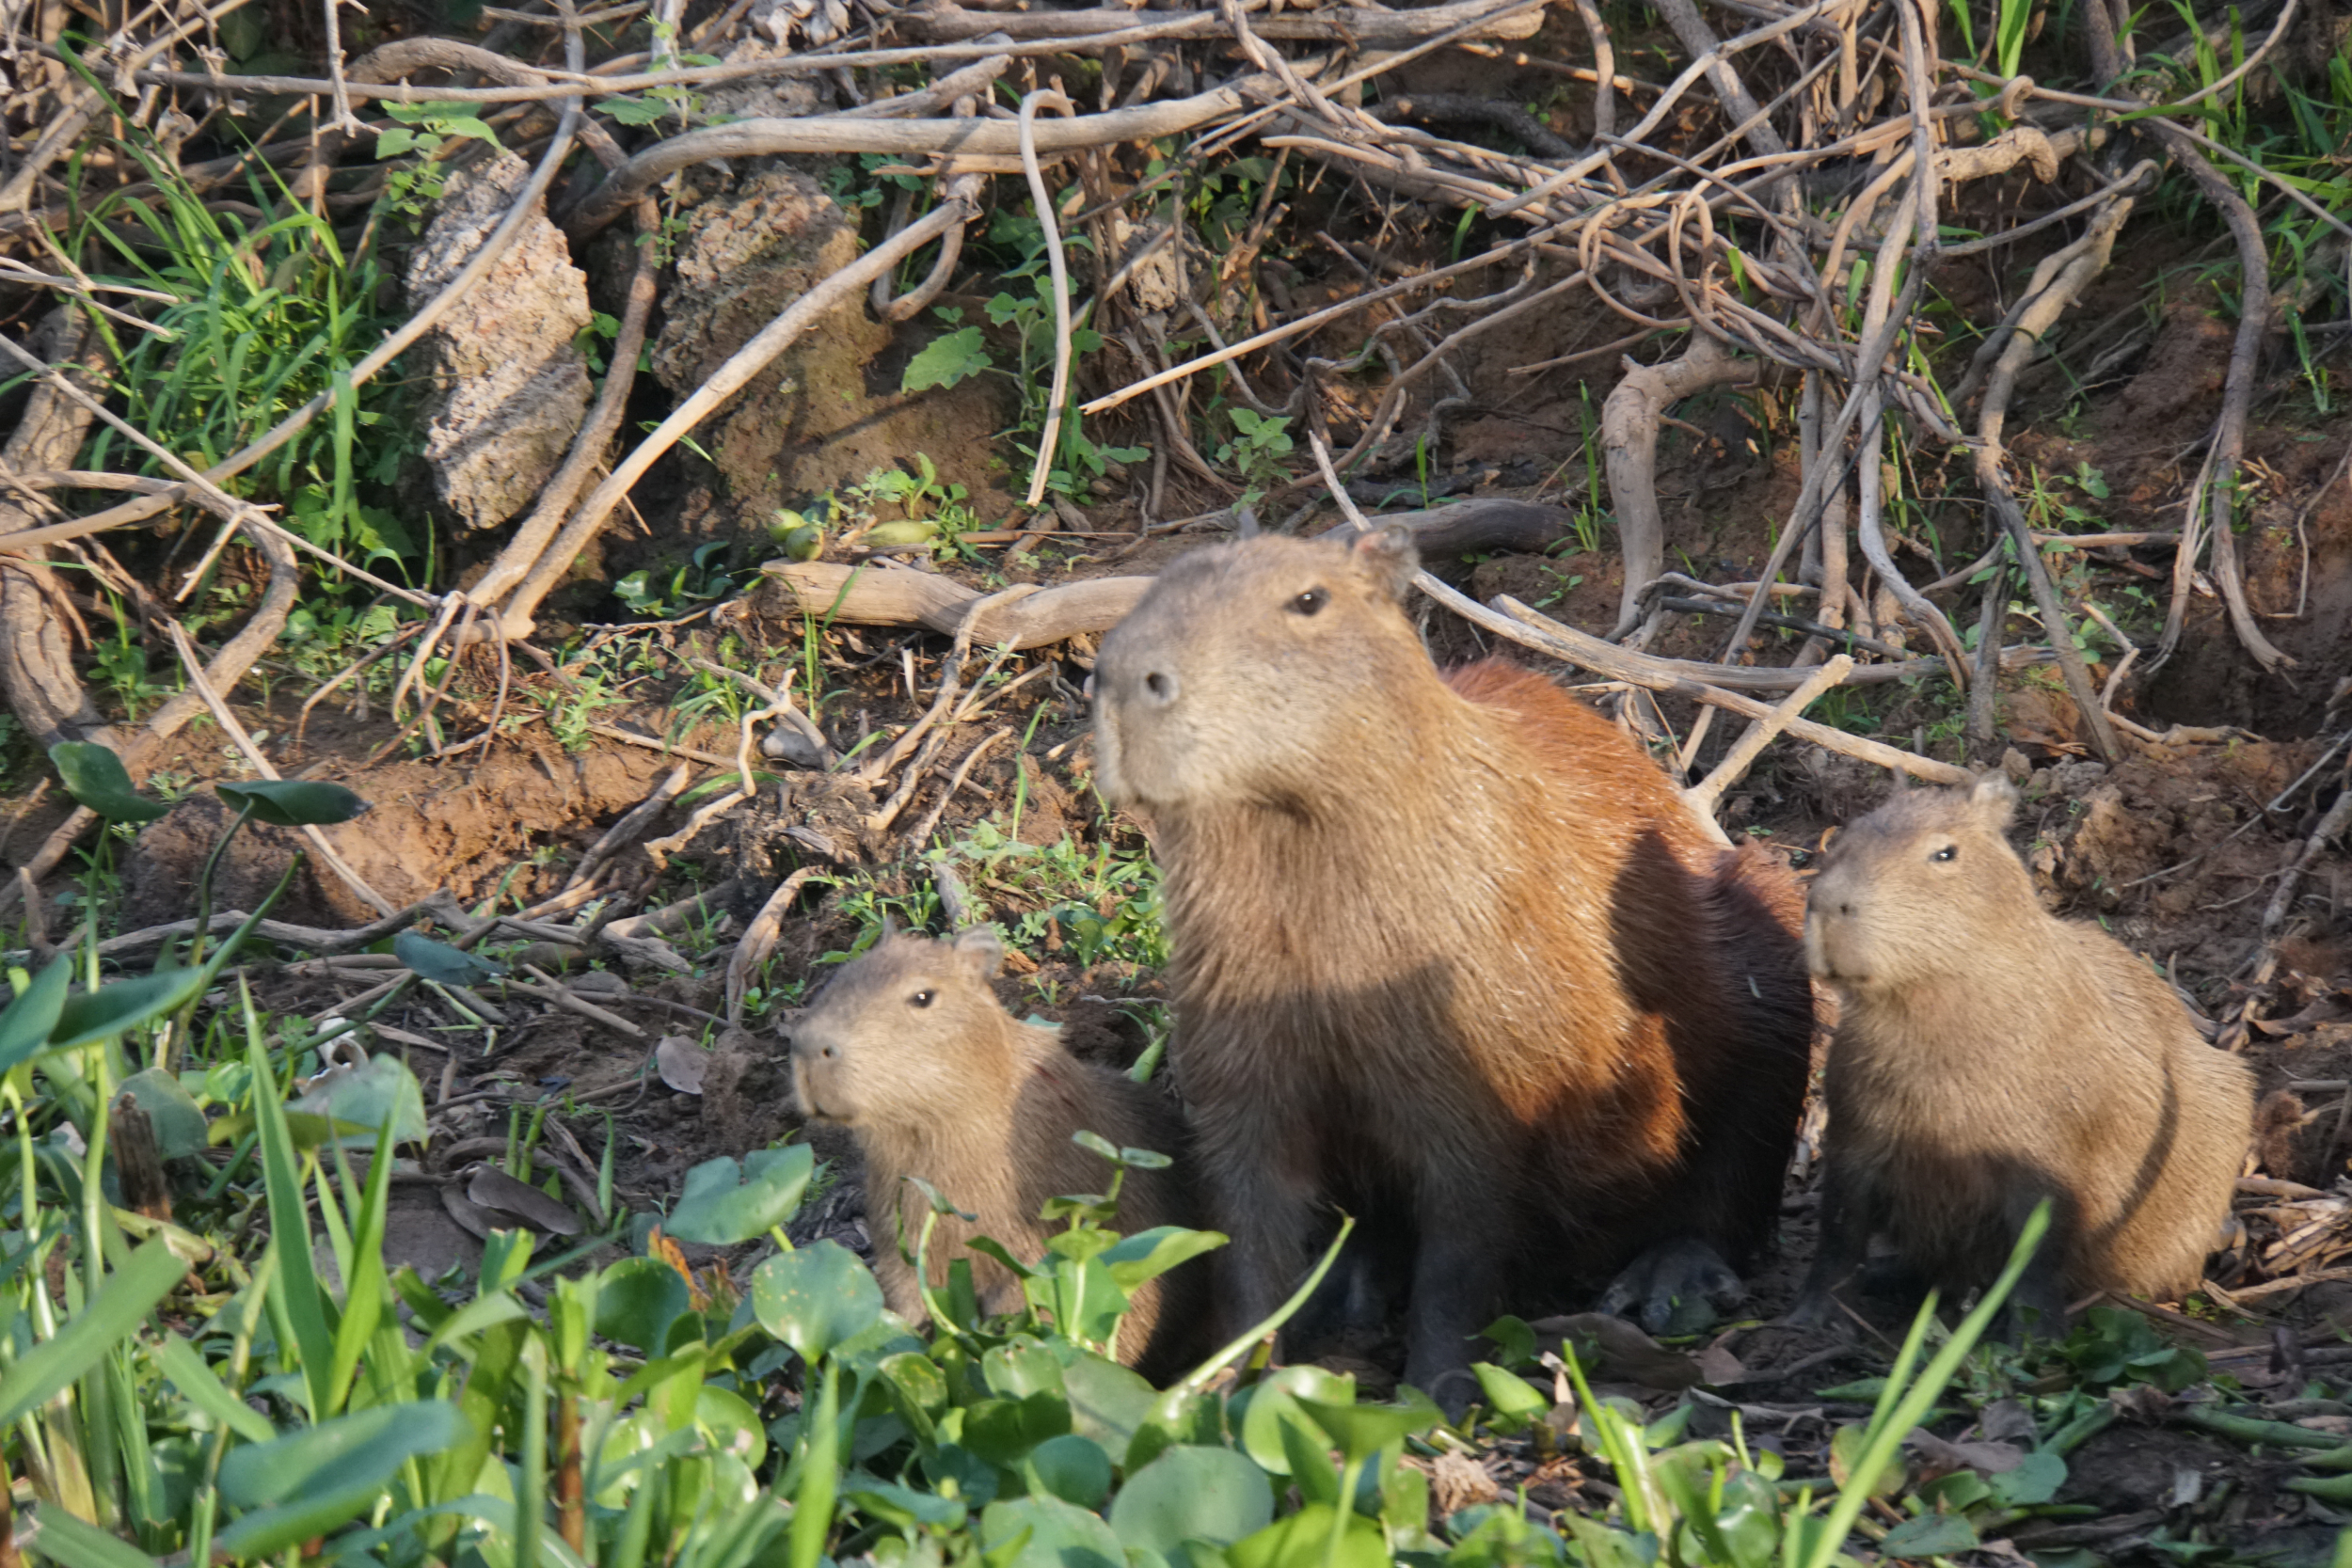 6. Capybara